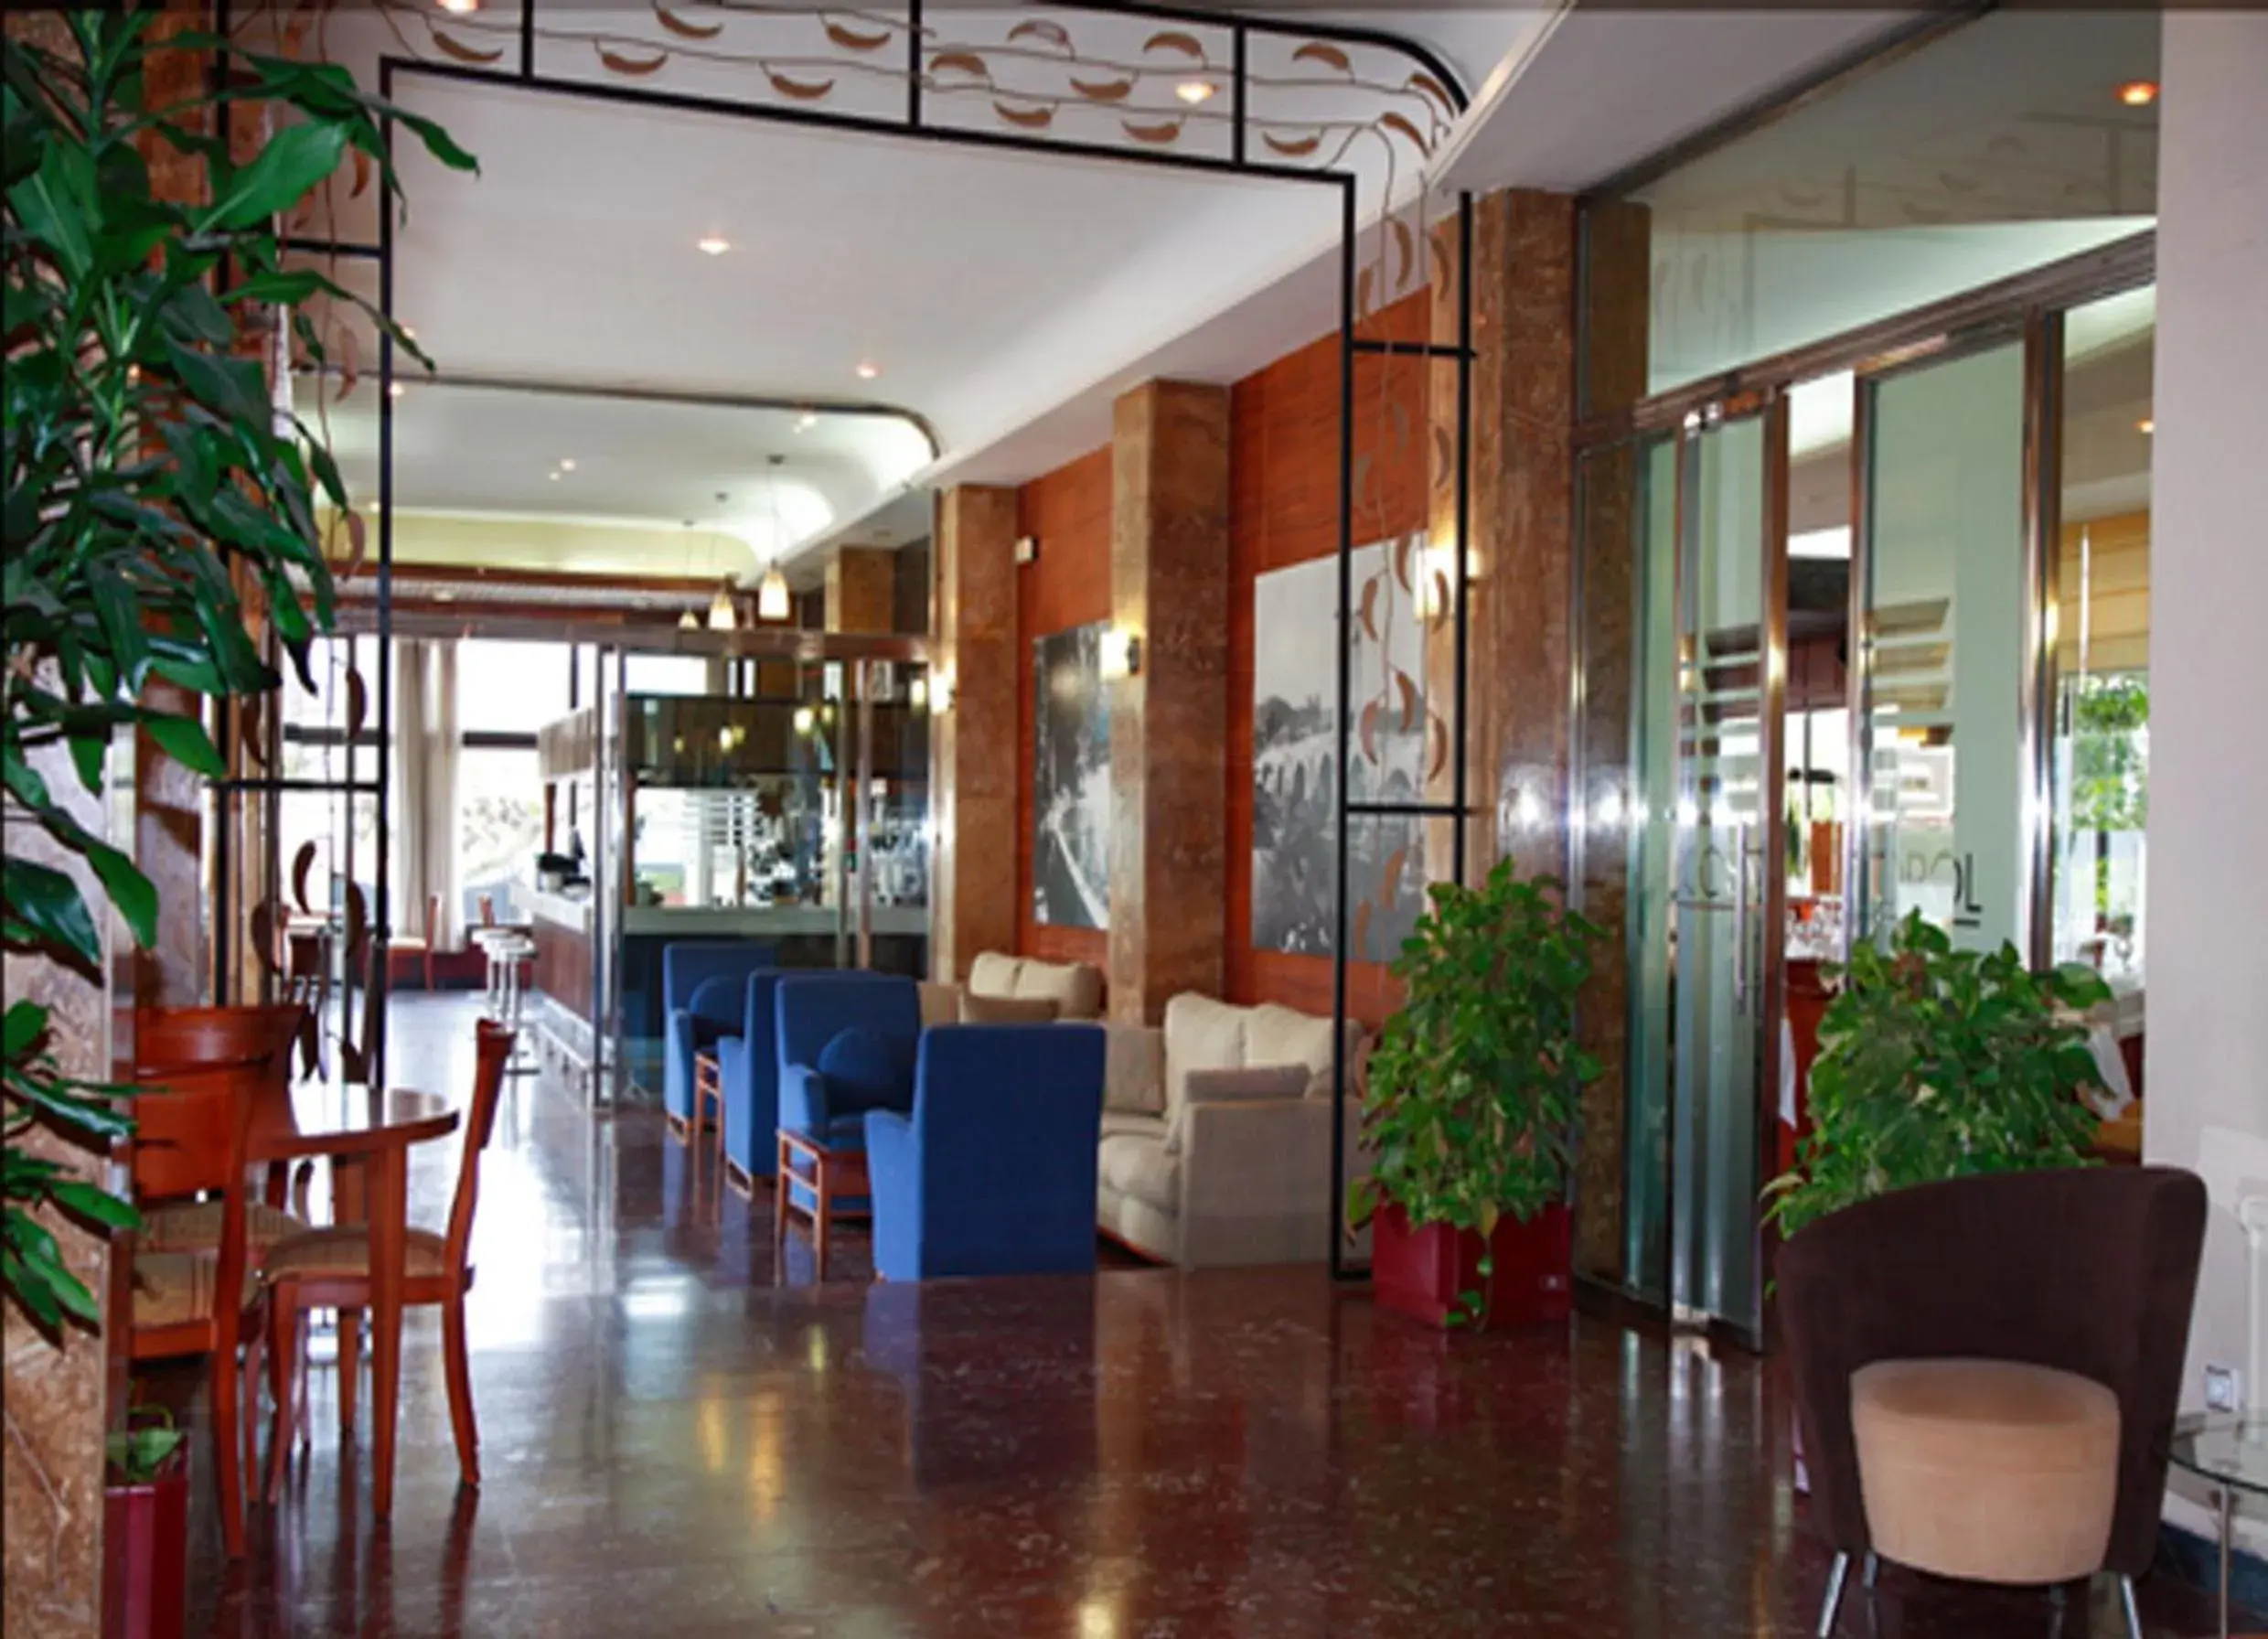 Lobby or reception, Lobby/Reception in Hotel Cosmopol